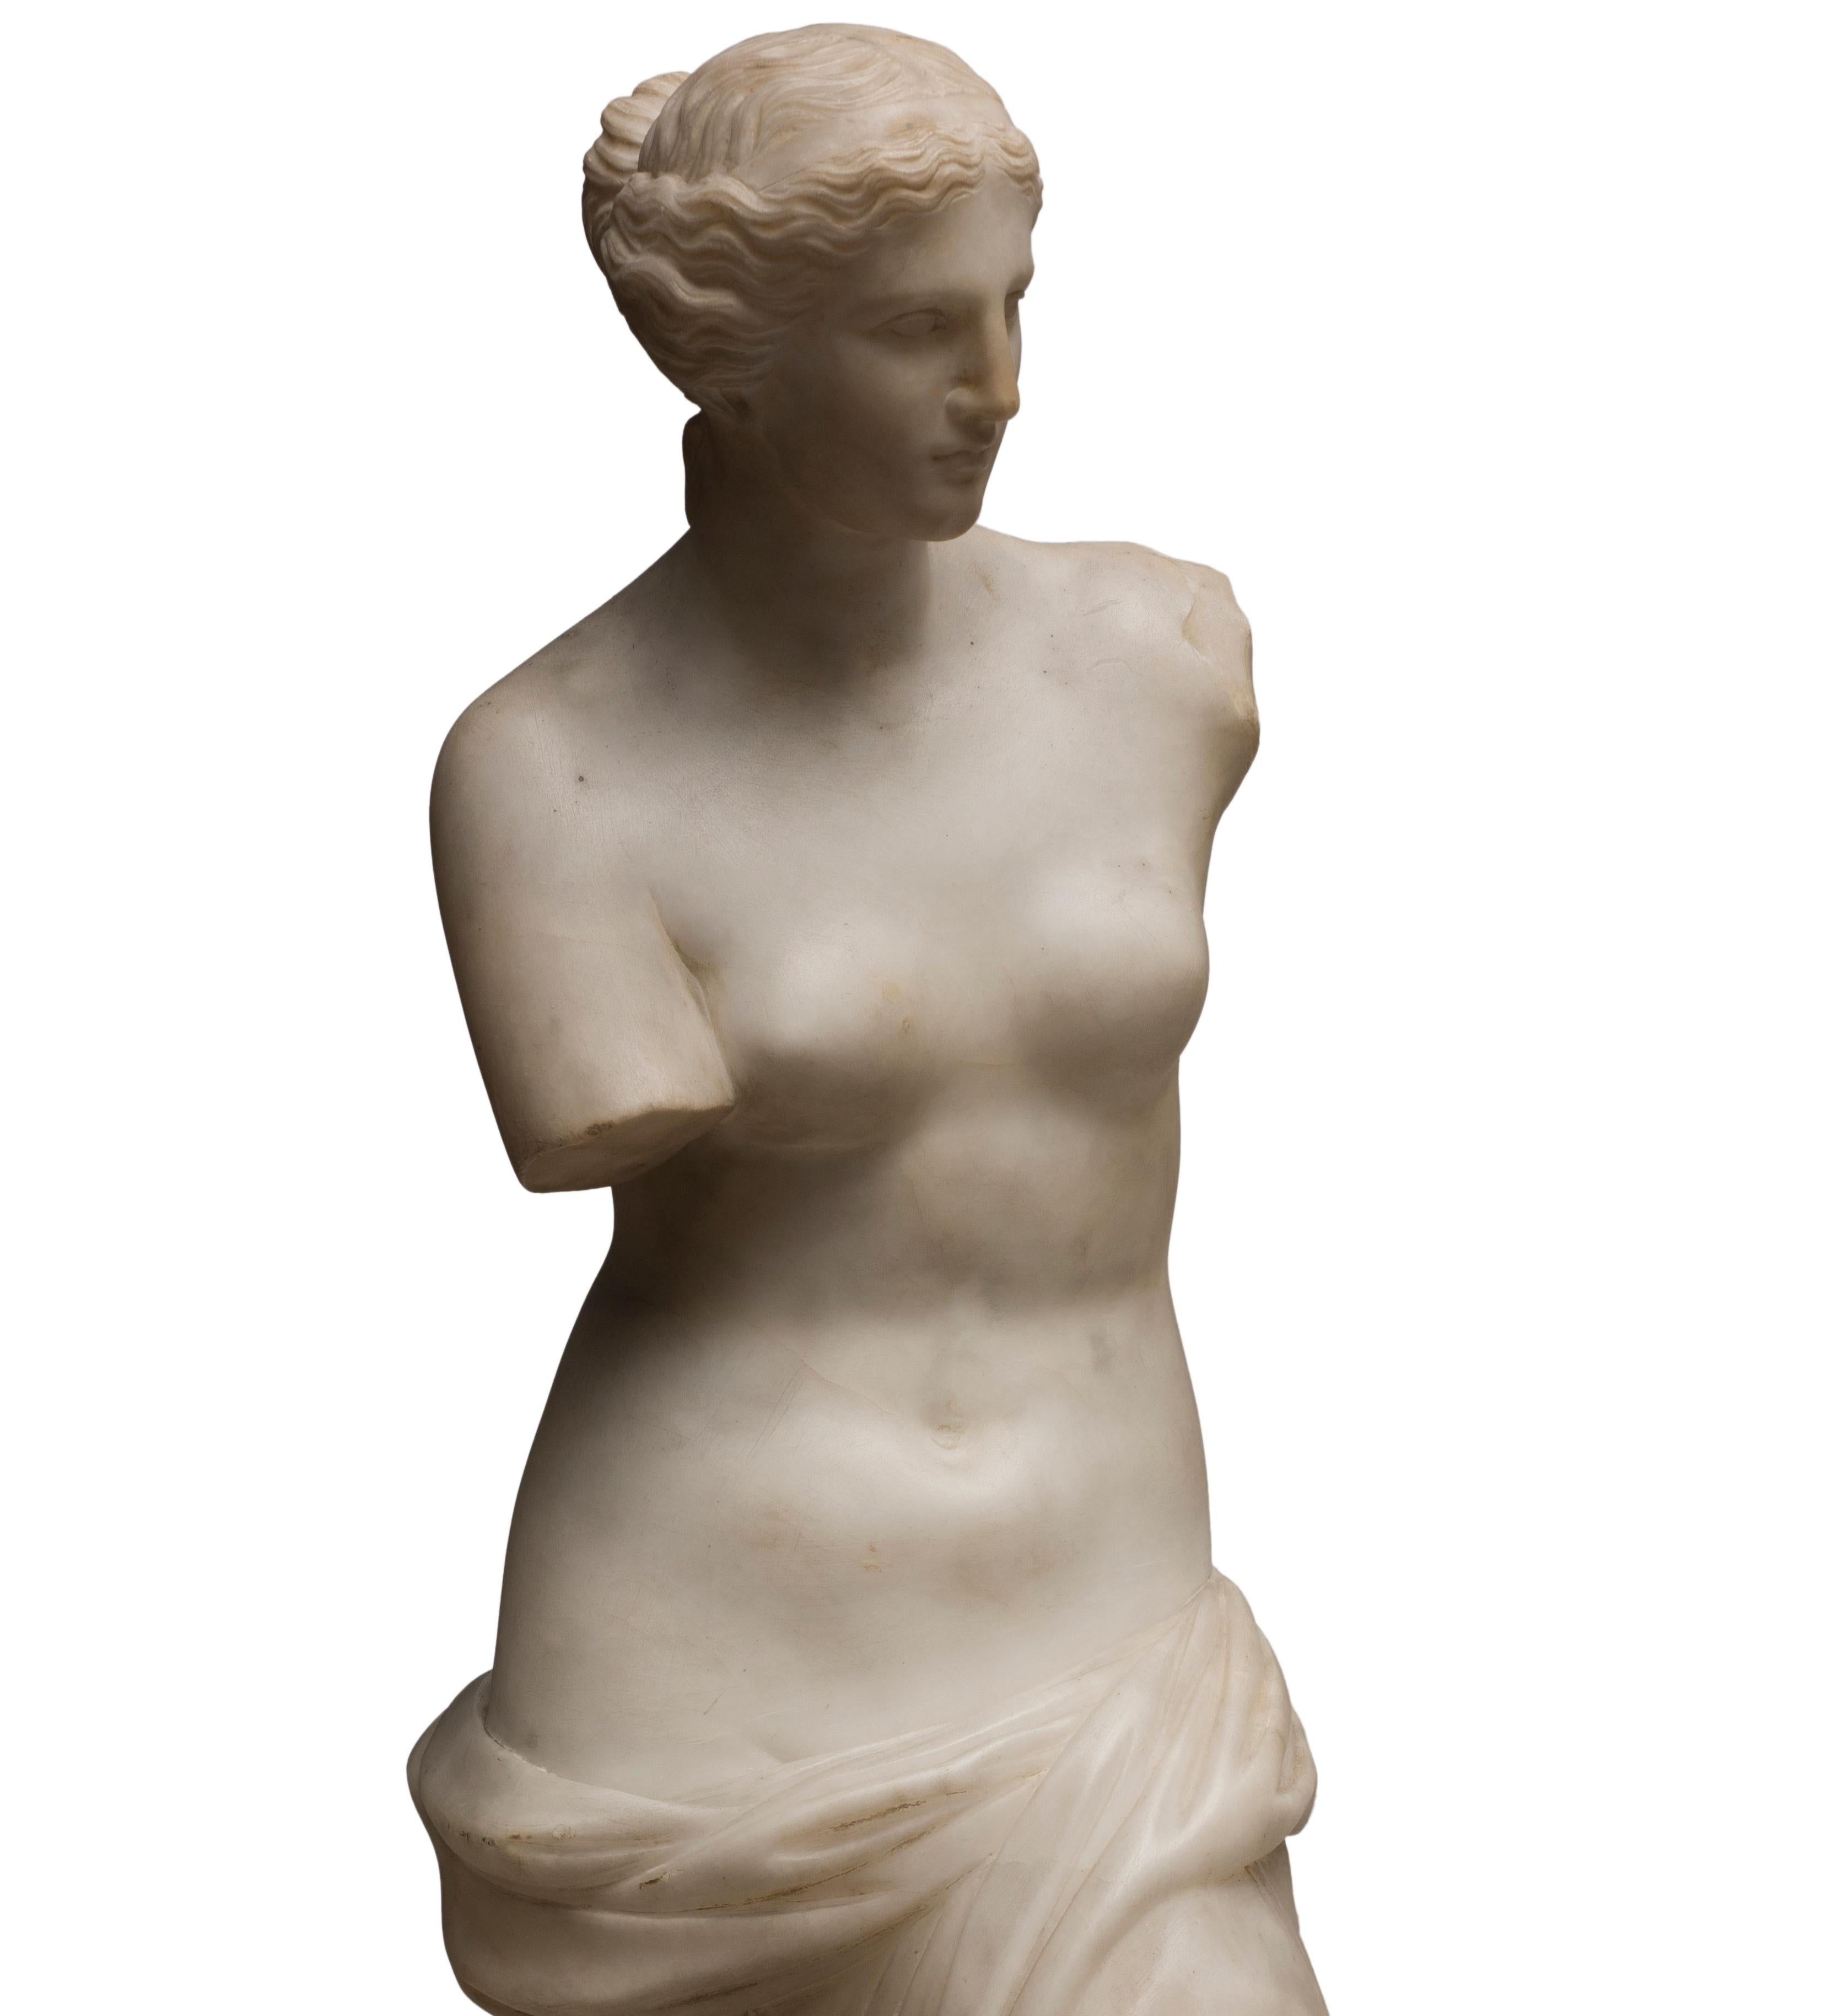 Die Venus de Milo ist eine Original-Skulptur aus Carrara-Marmor, die 1820 von einem französischen Bildhauer angefertigt wurde.

Die schöne Skulptur ist eine Kopie der berühmten Venus von Milo, der antiken Statue, die gemeinhin für die Darstellung